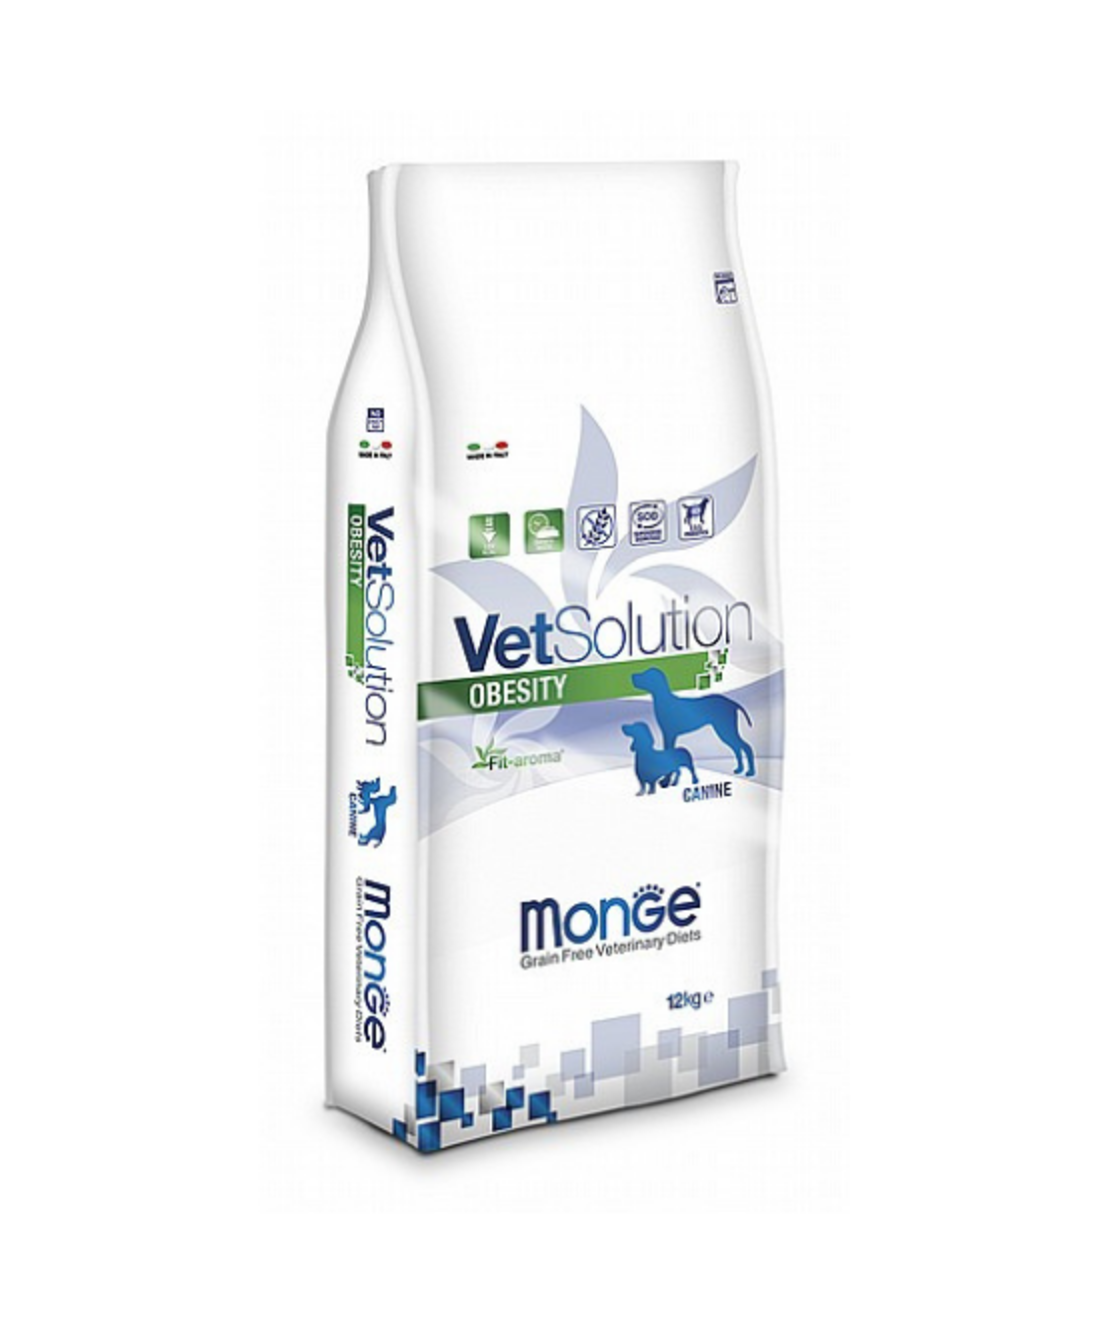 MONGE VetSolution מונג' וט סולושן אובסיטי מזון רפואי לכלבים בעלי משקל יותר 12 ק